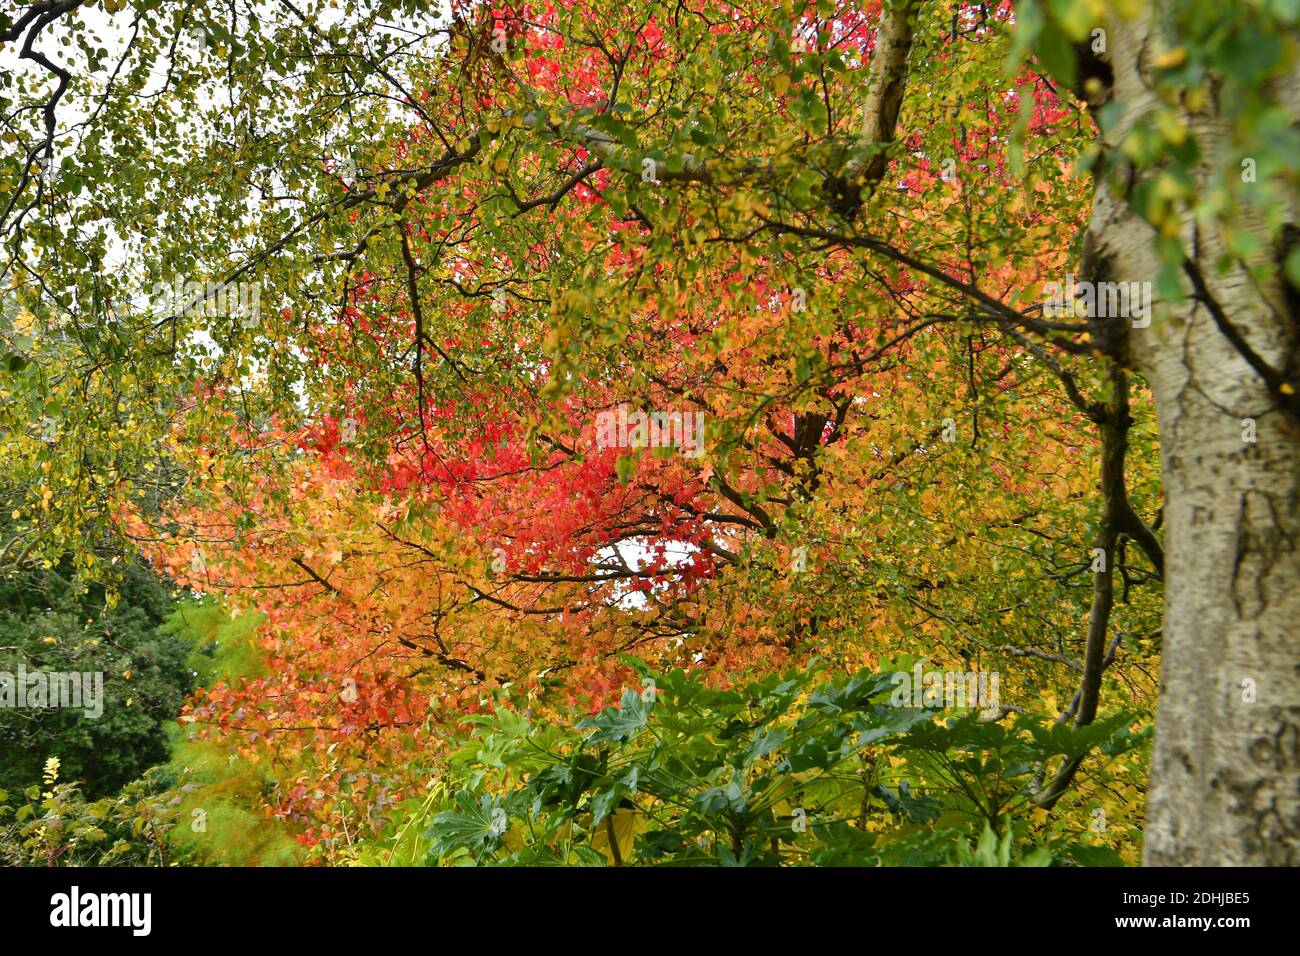 Feature on Stoke Park, Guildford - Herbstfarben, wie die Arbeiten zur Wiederherstellung und Verbesserung der orientalischen Gärten fortgesetzt. Guildford, Surrey. Bild aufgenommen am 20. Oktober 2020 Stockfoto